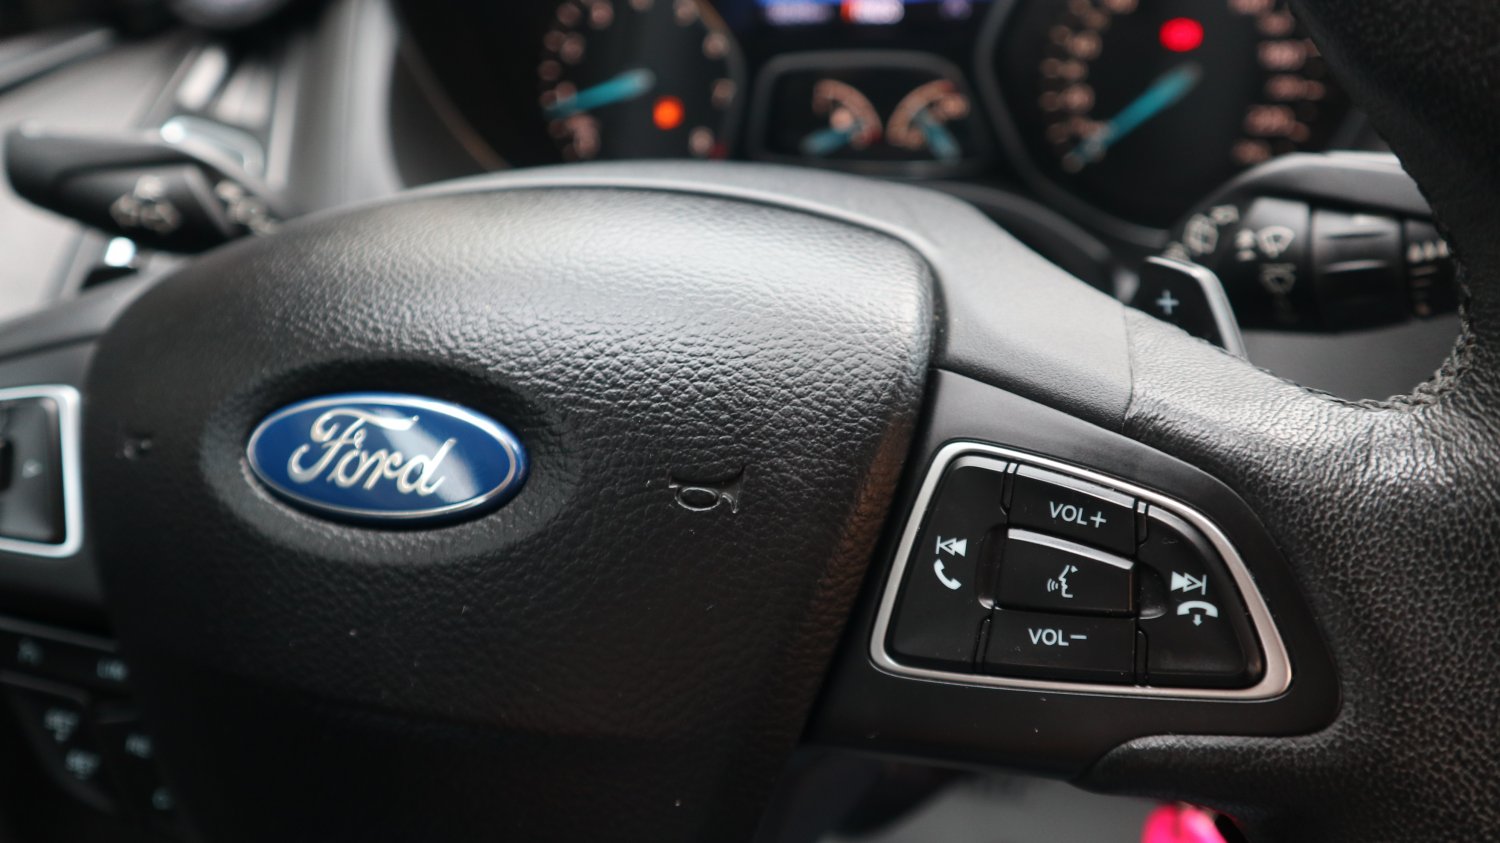 Ford 福特 ／ Focus ／ 2015年 ／ 2015年 Ford Focus 紅色 福特中古車 ／ 九州欣旺汽車 (台南)